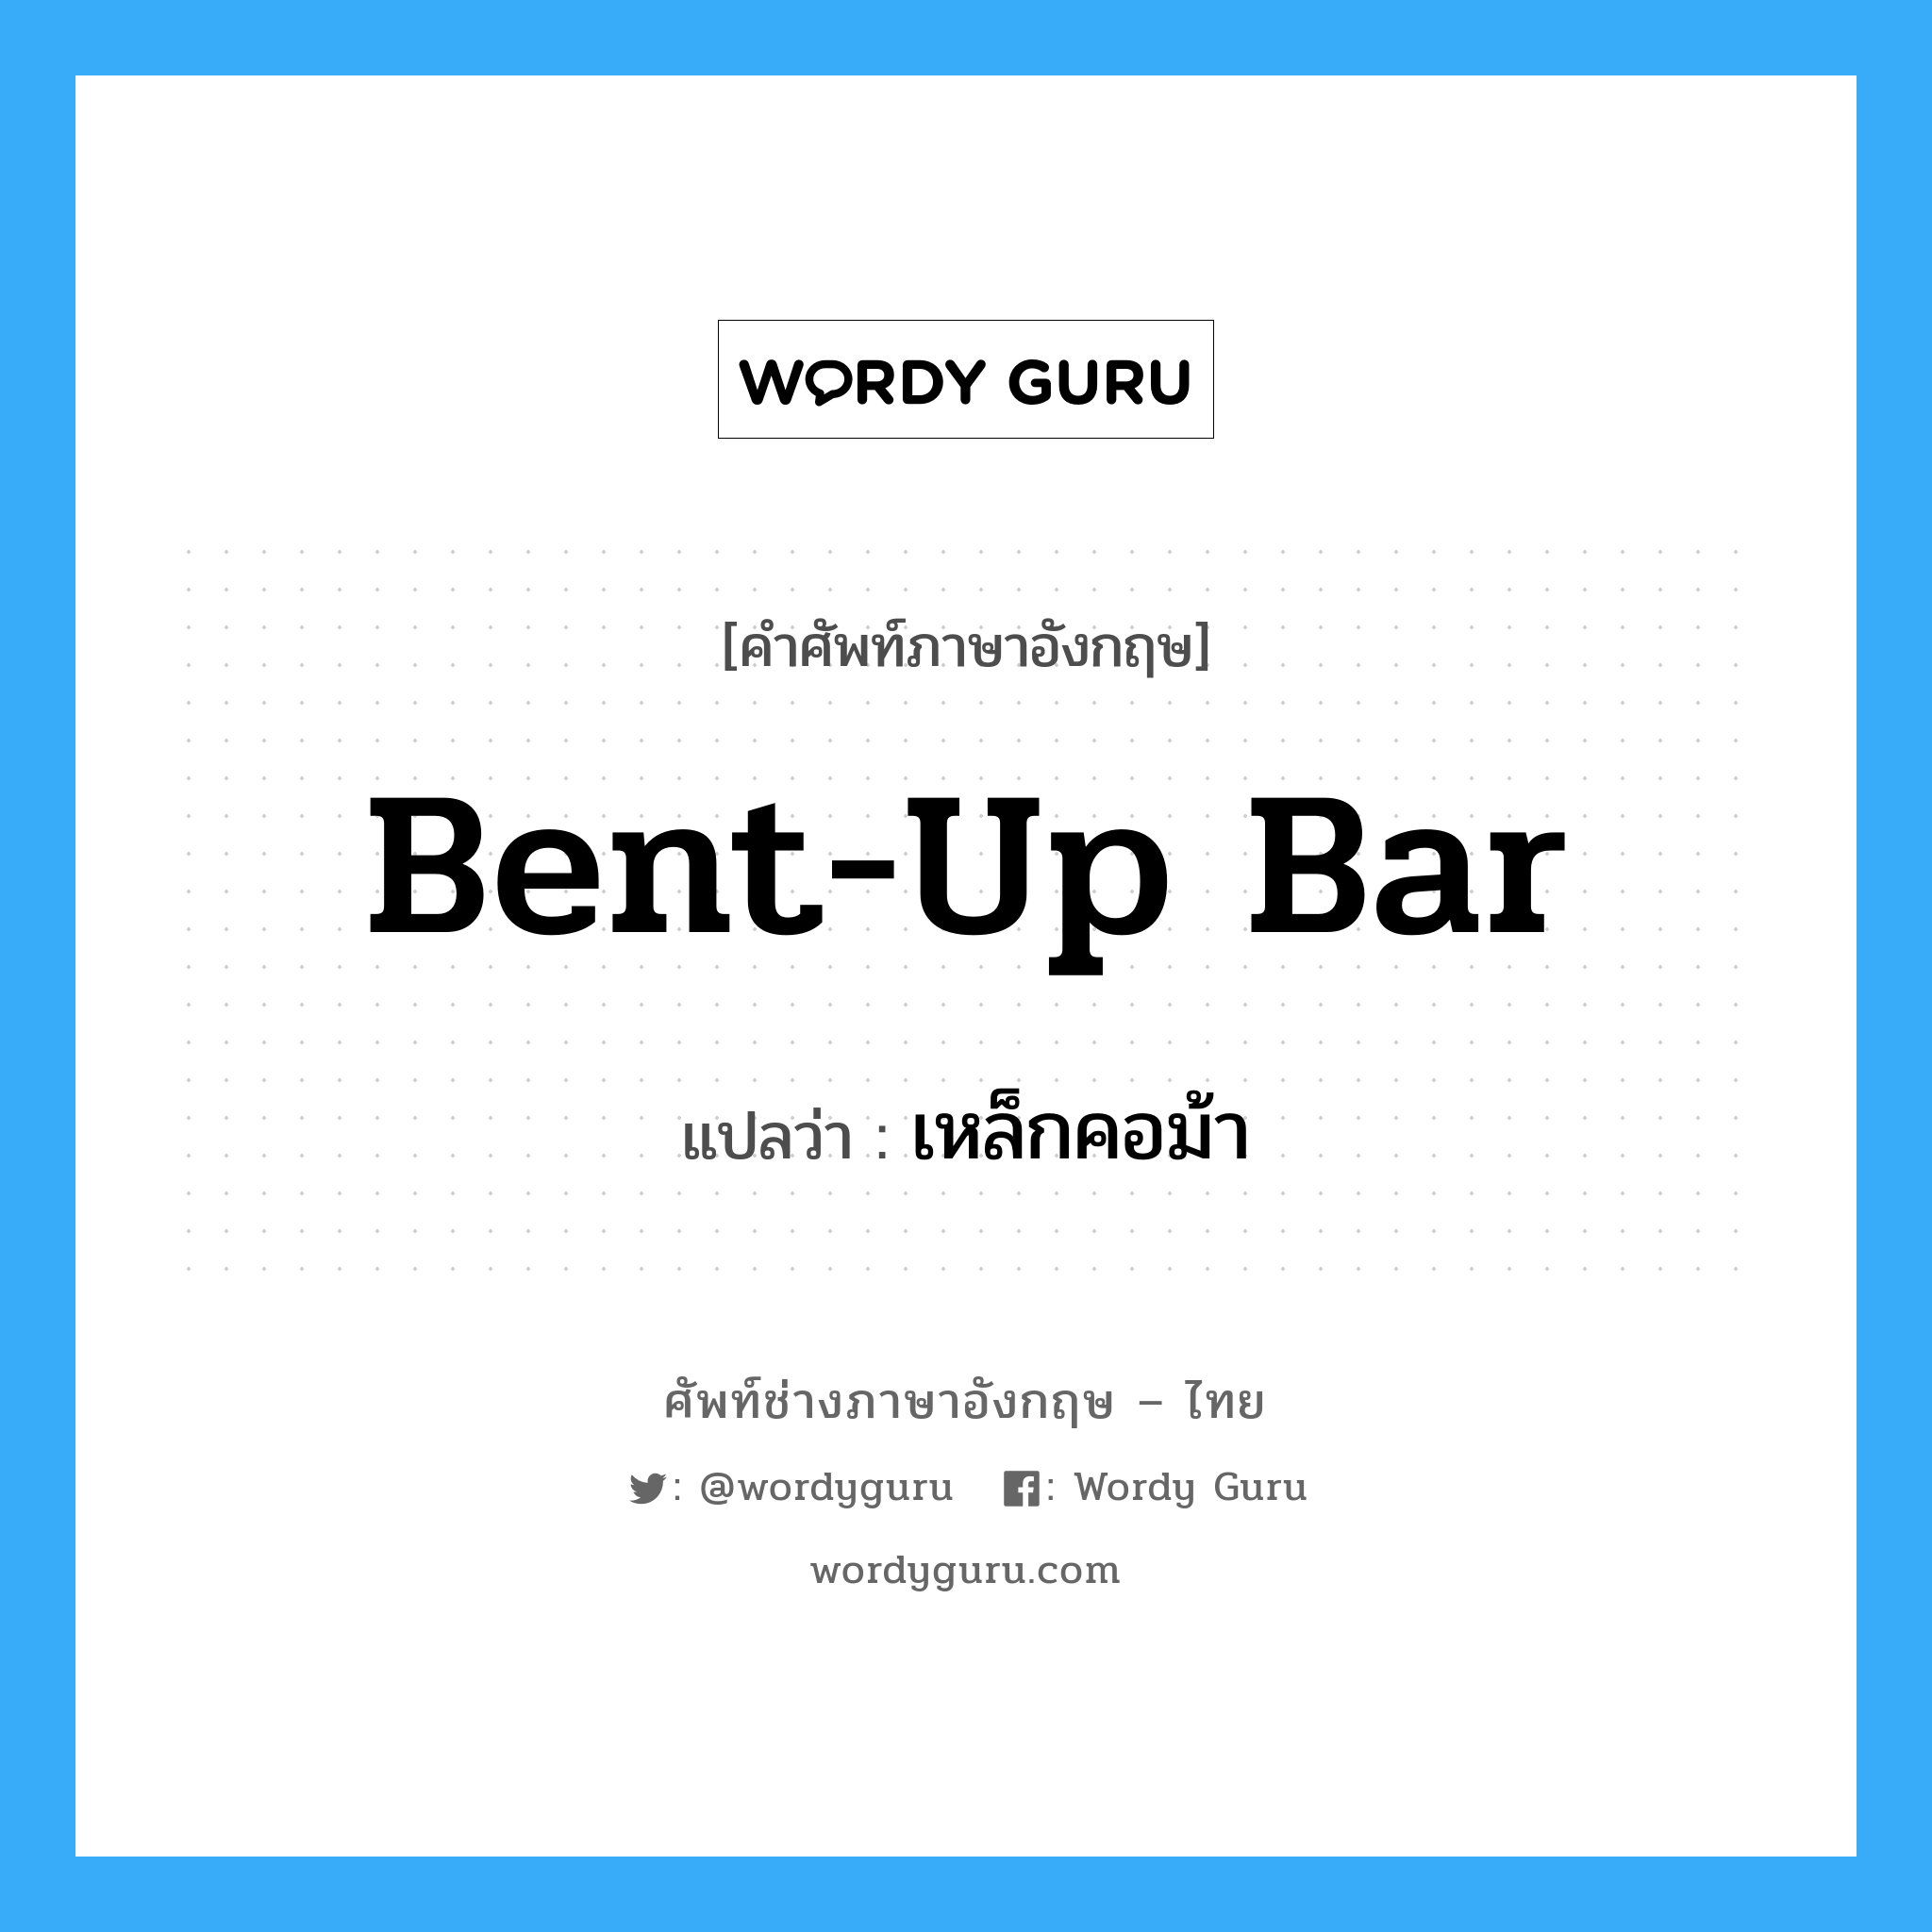 bent-up bar แปลว่า?, คำศัพท์ช่างภาษาอังกฤษ - ไทย bent-up bar คำศัพท์ภาษาอังกฤษ bent-up bar แปลว่า เหล็กคอม้า